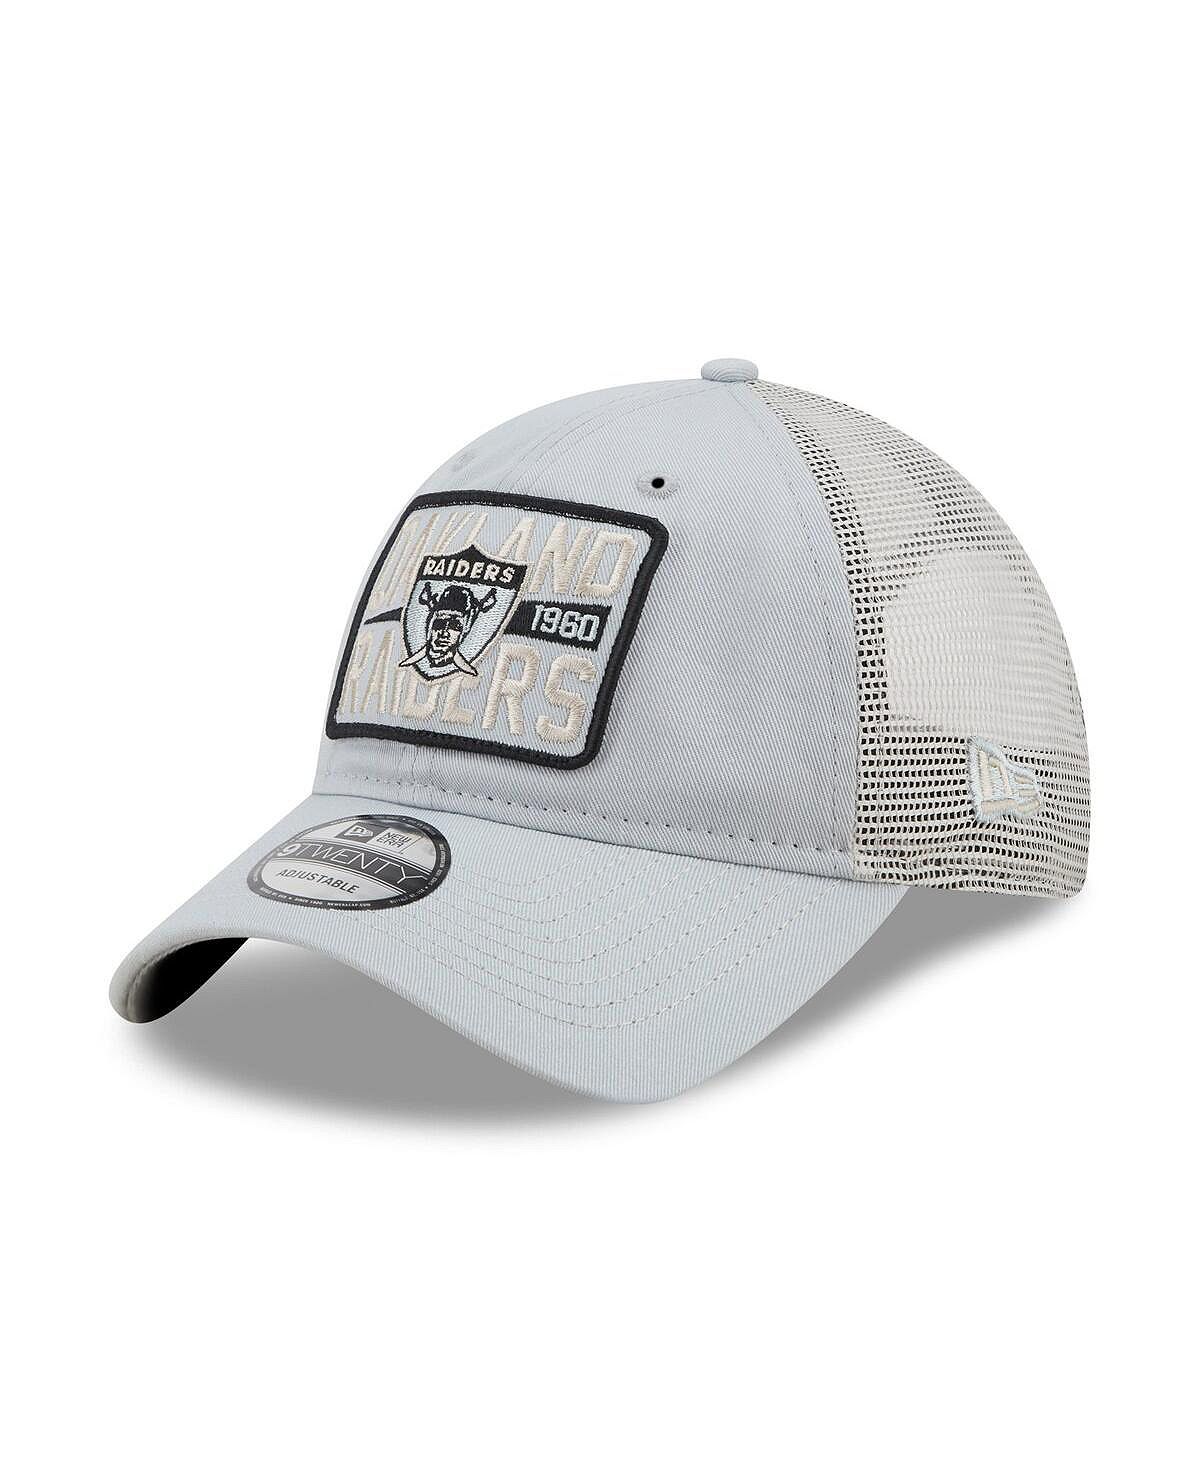 Мужская серебряная натуральная кепка Snapback с историческим логотипом Oakland Raiders Devoted Trucker 9TWENTY New Era